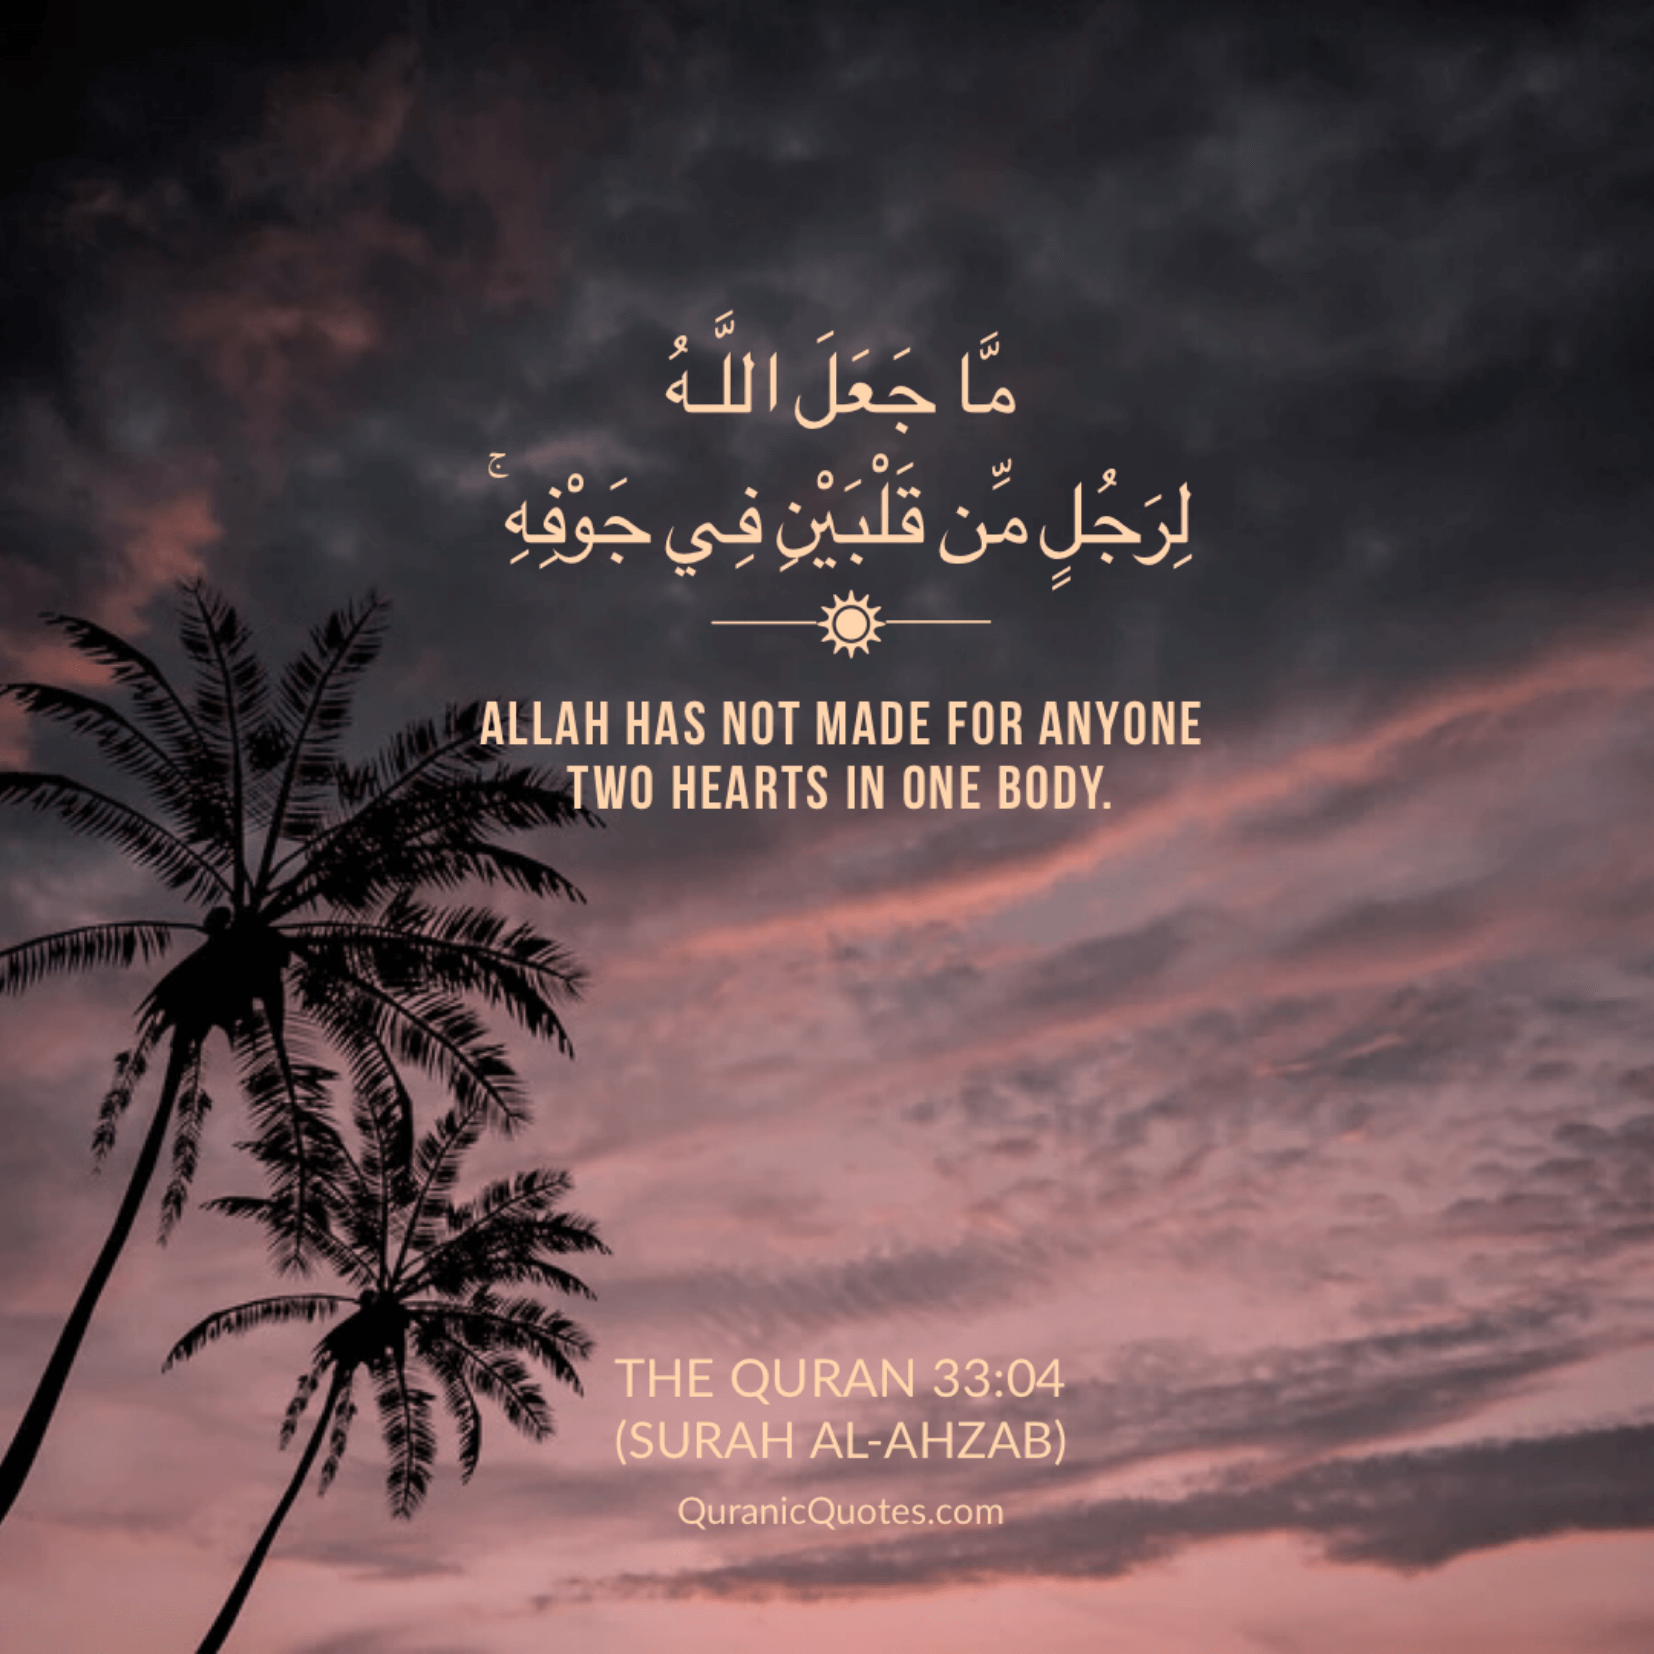 #333 The Quran 33:04 (Surah al-Ahzab) - Quranic Quotes